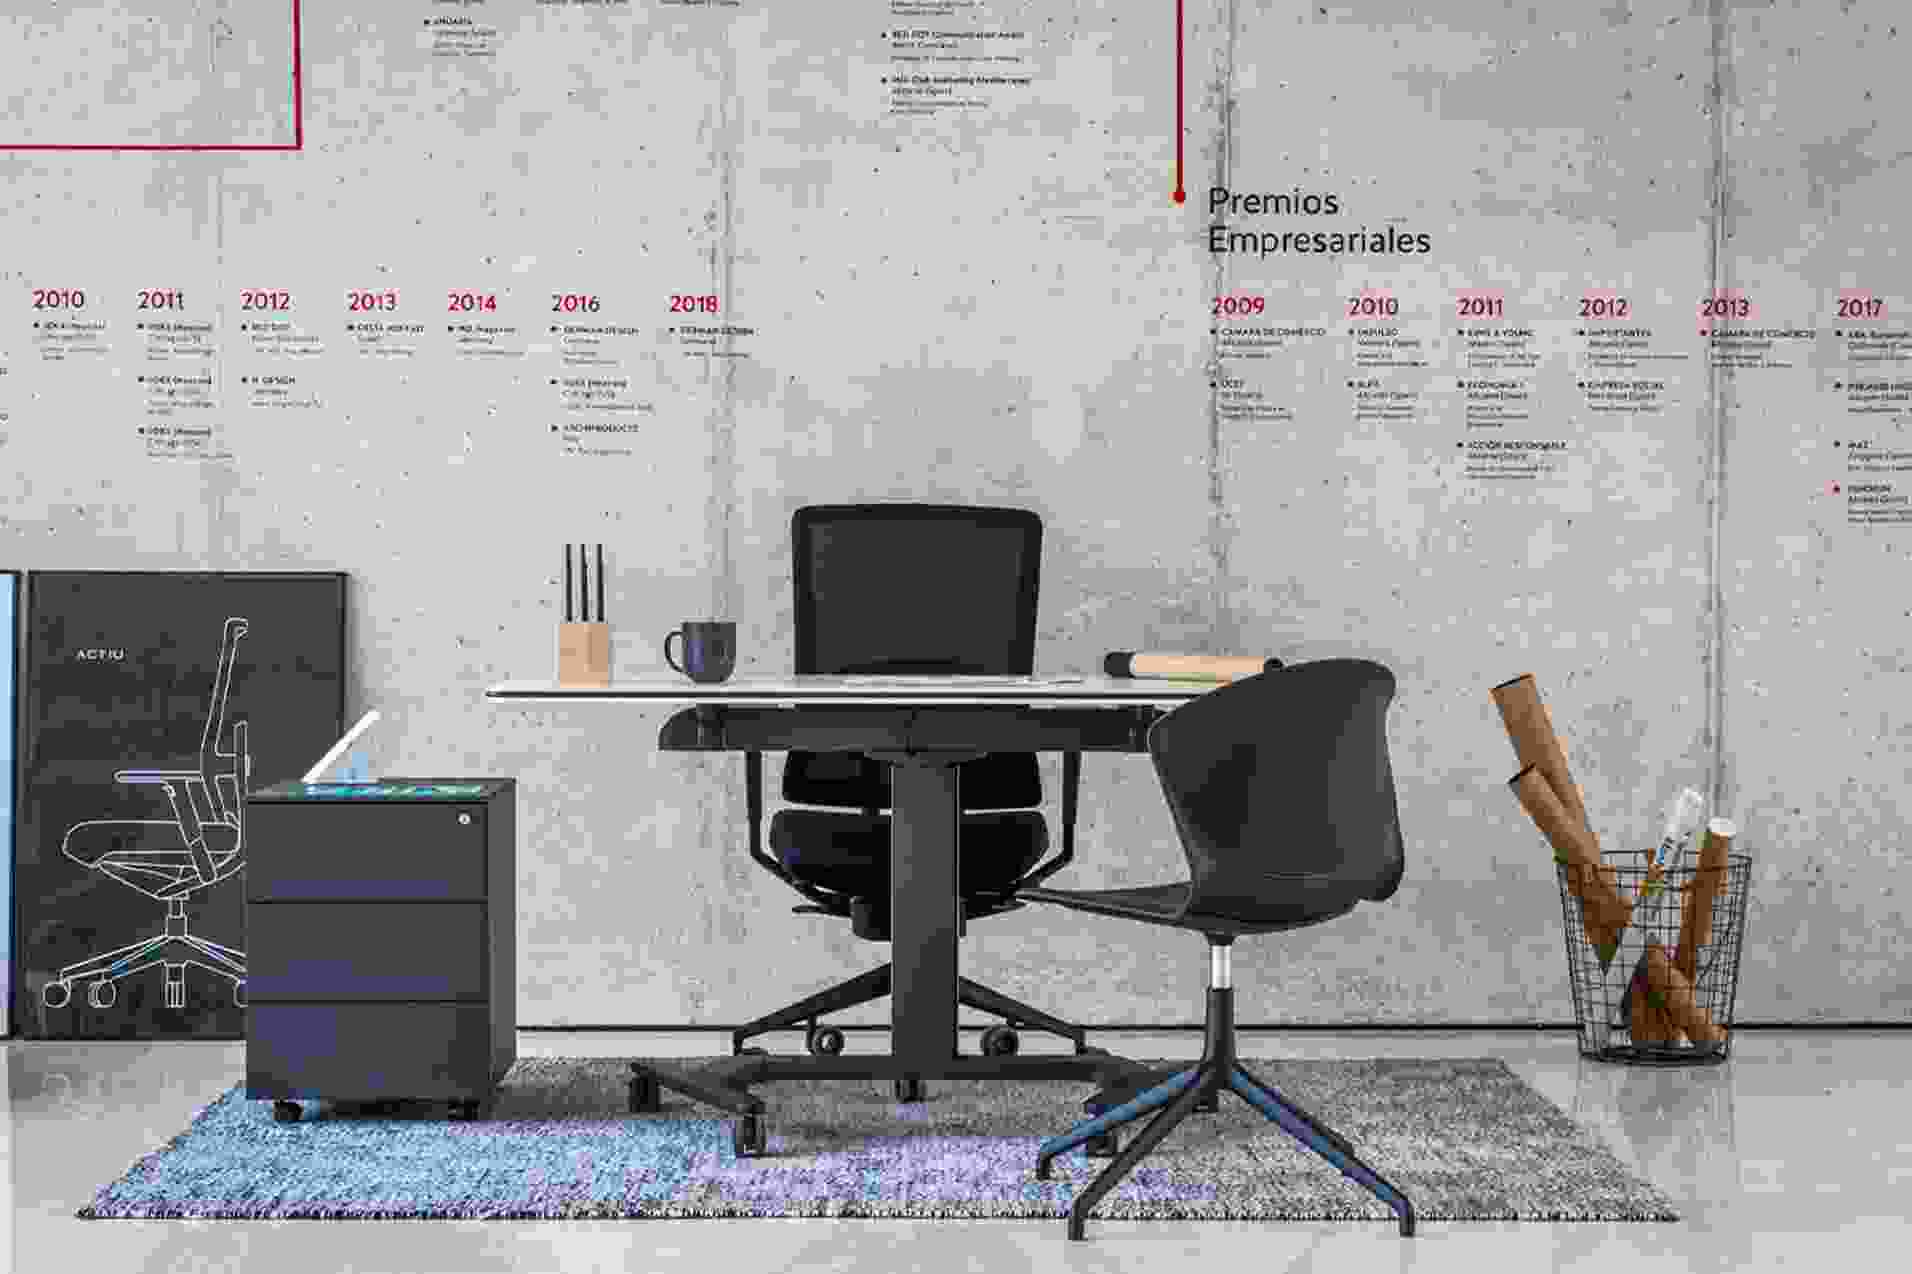 Un home office tendance : l’efficacité nordique et la productivité industrielle